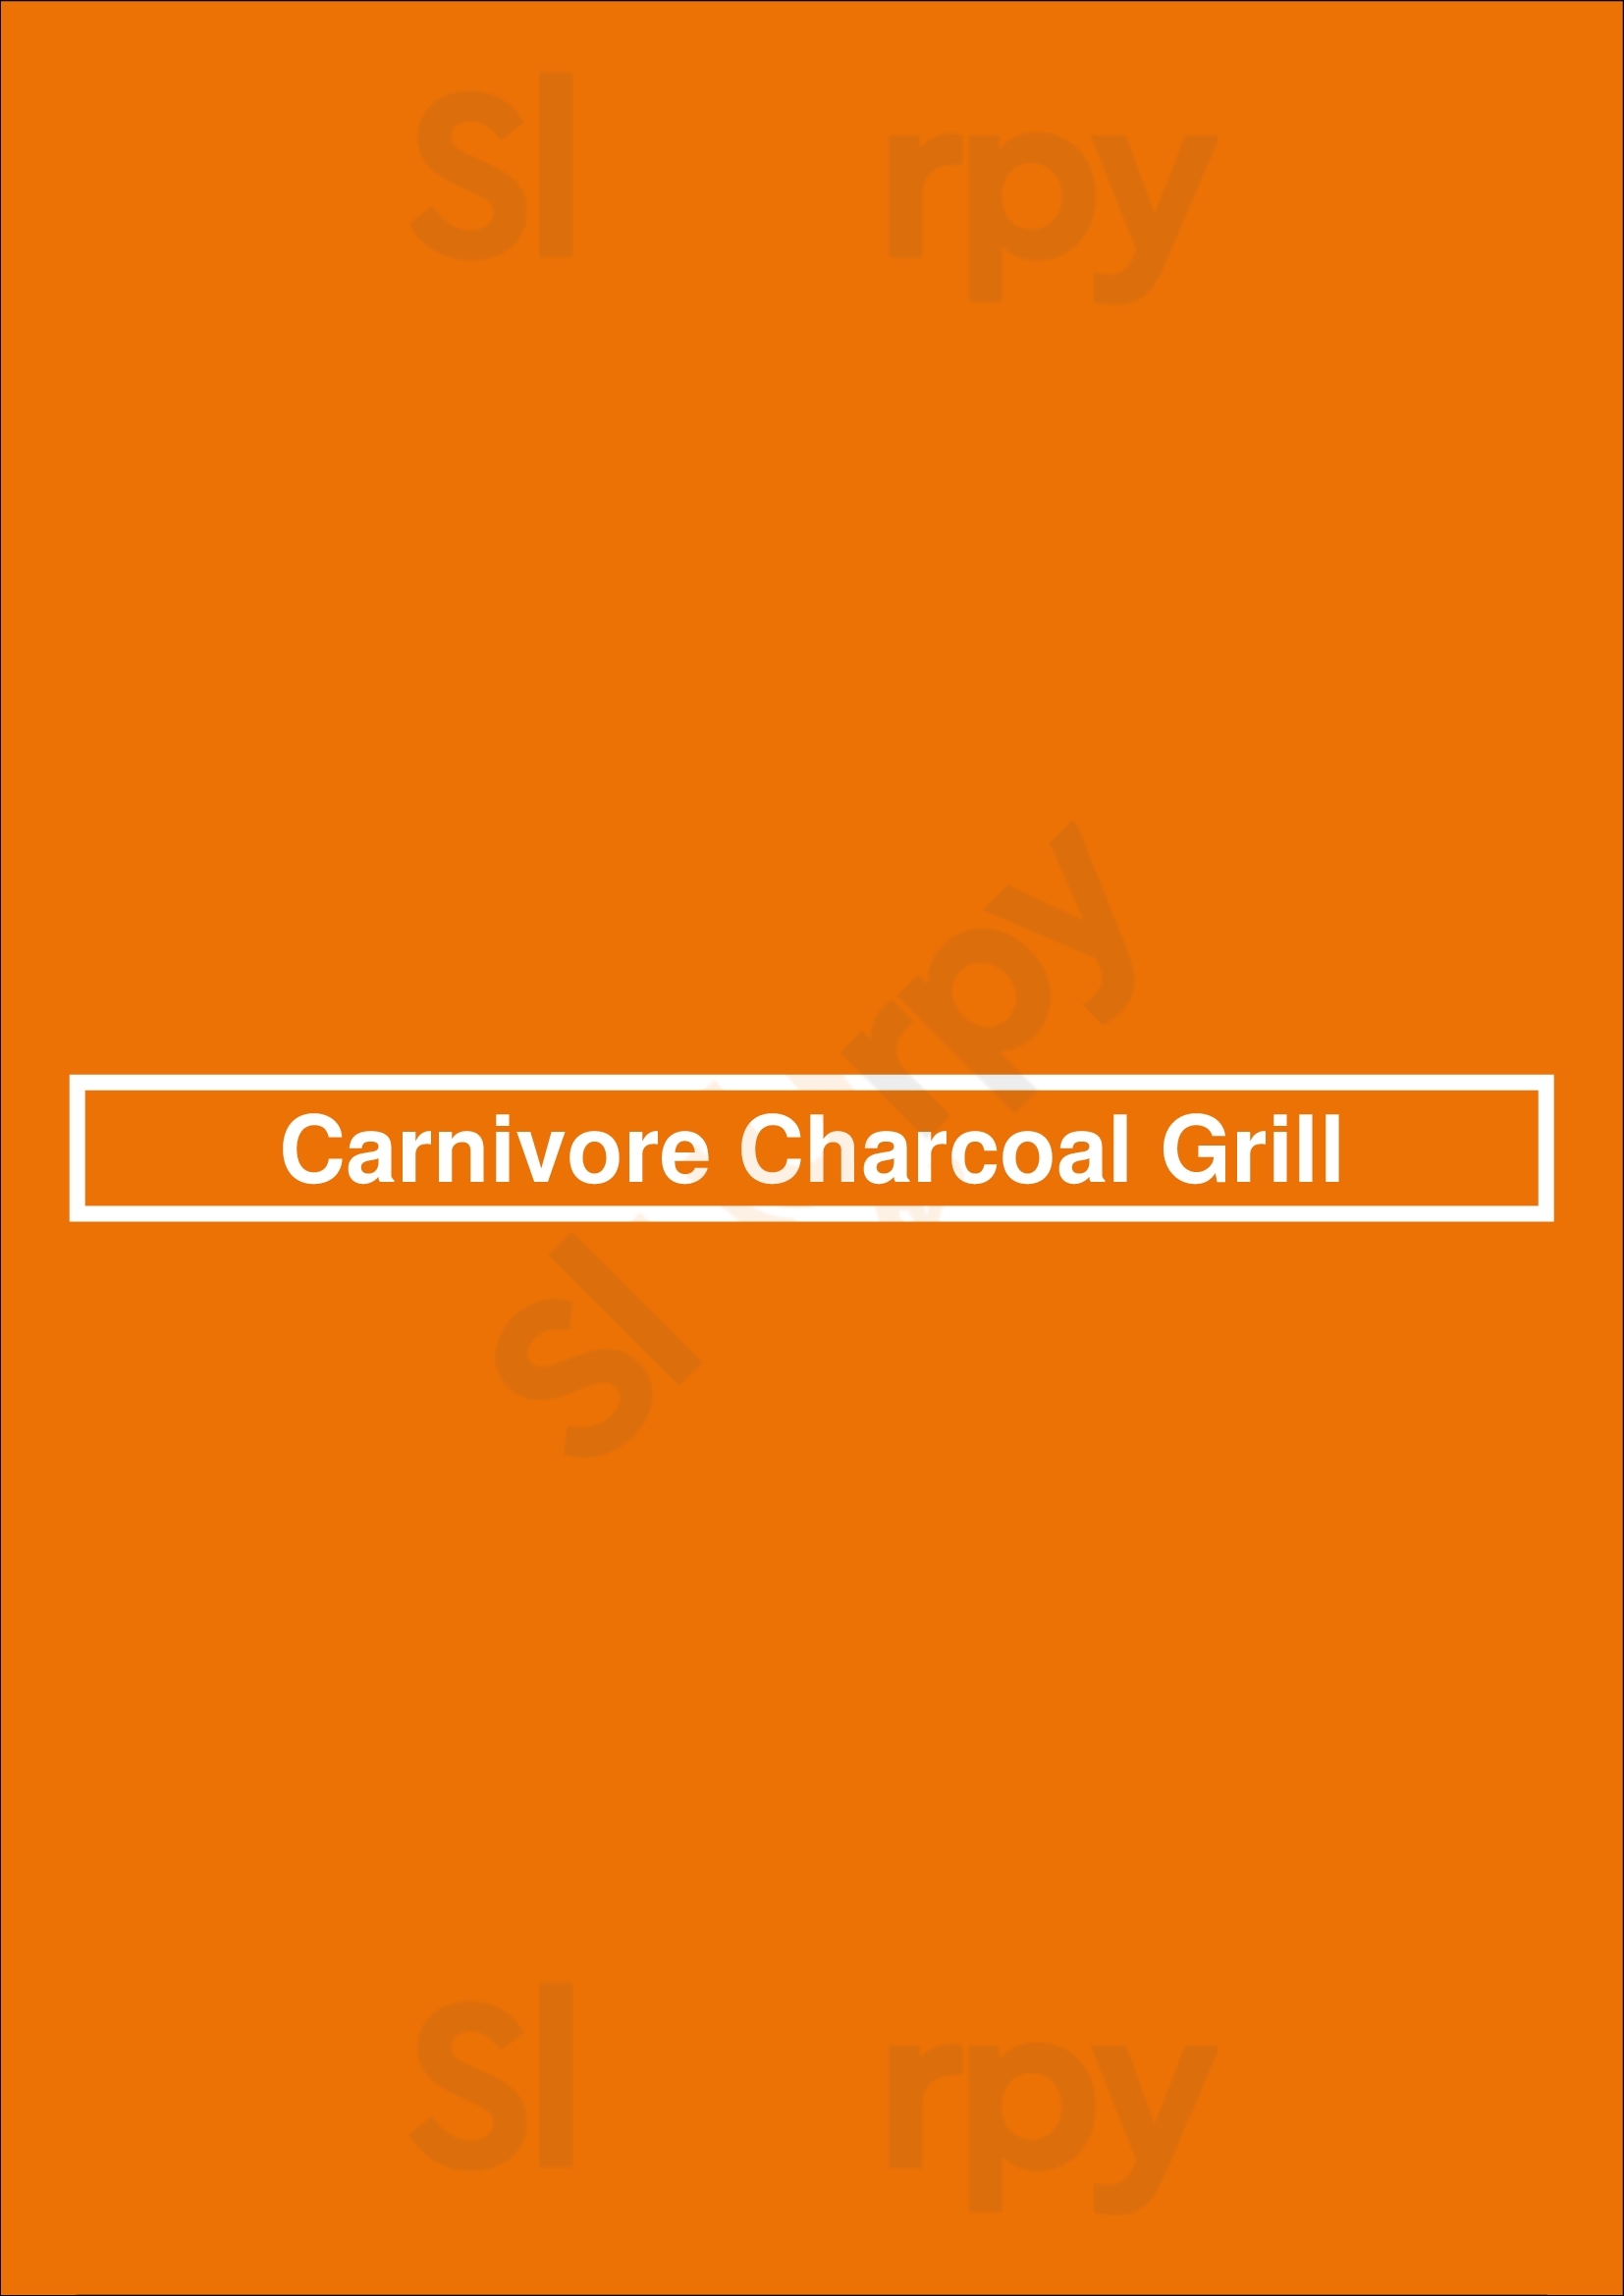 Carnivore Charcoal Grill Bruxelles Menu - 1